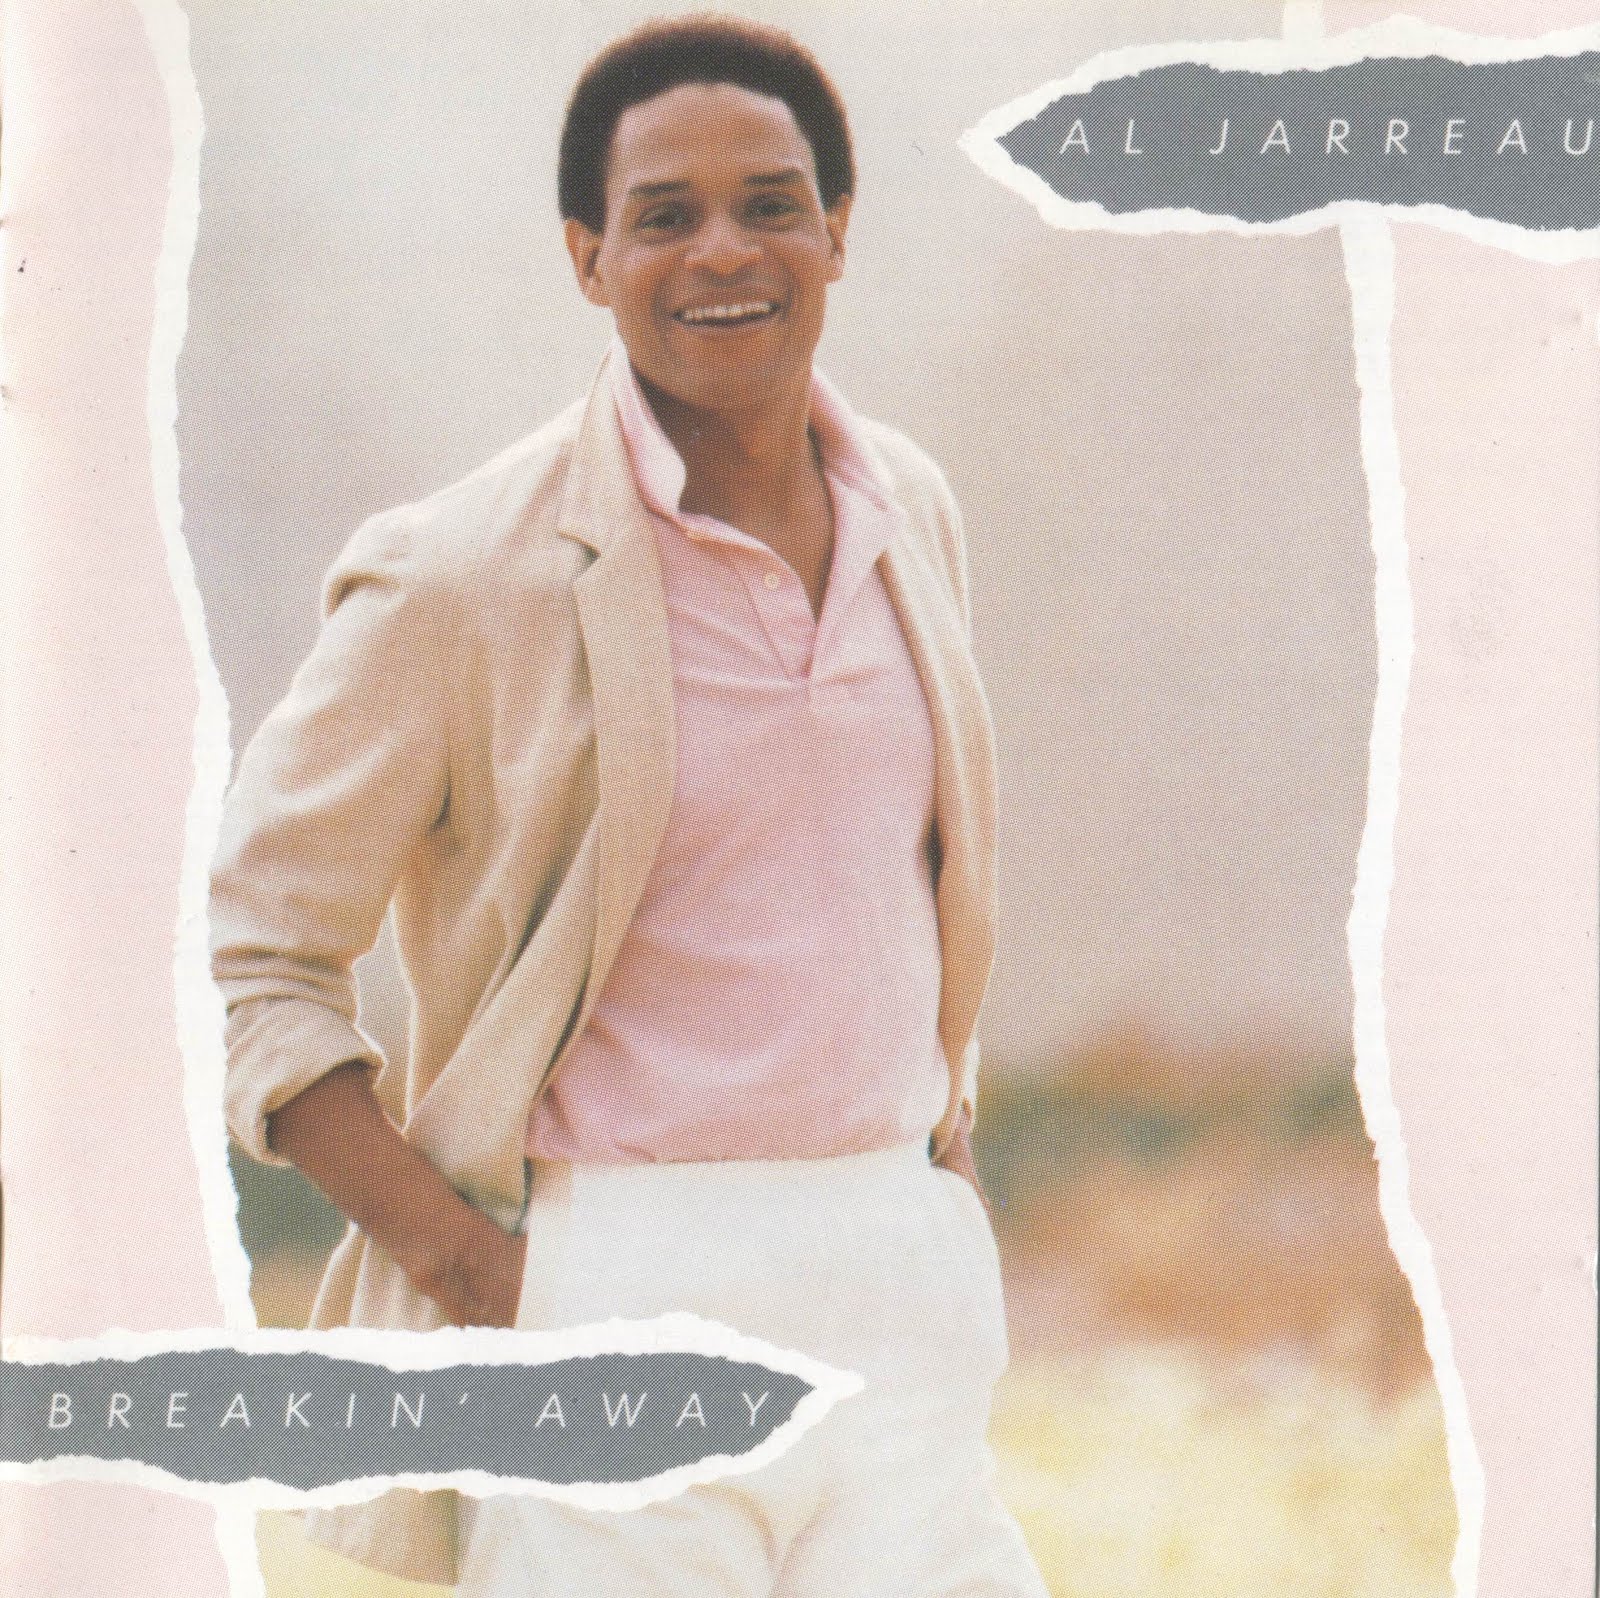 Al Jarreau - Breakin' Away 1981